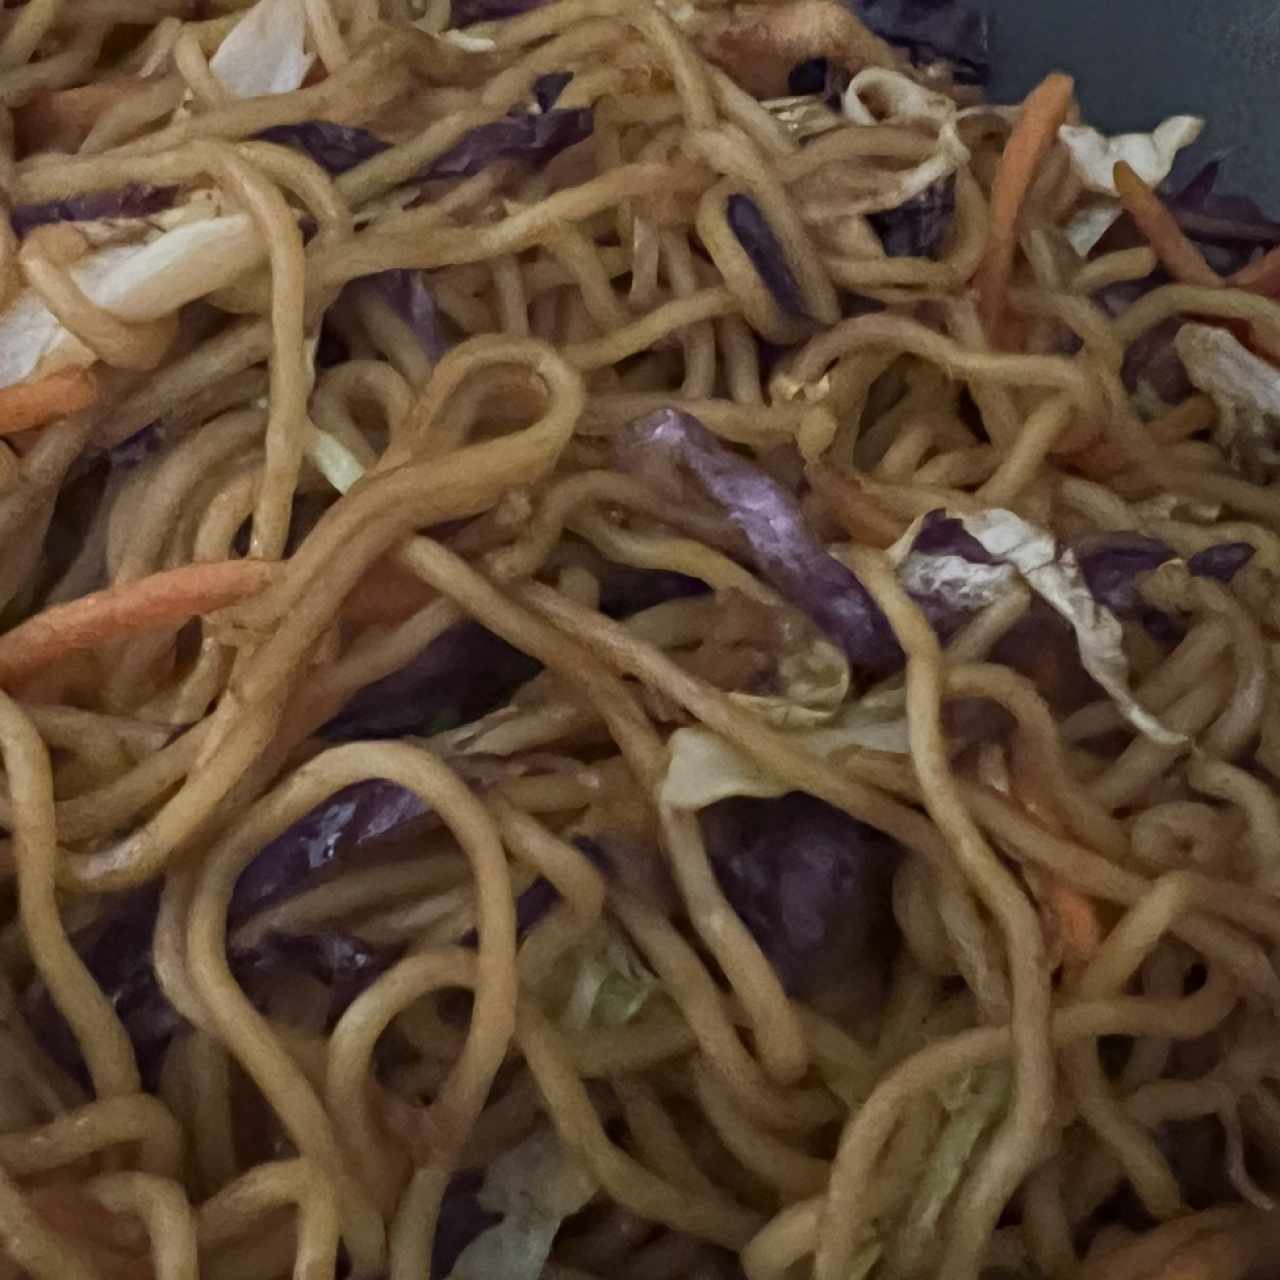 Singapore Street Noodles